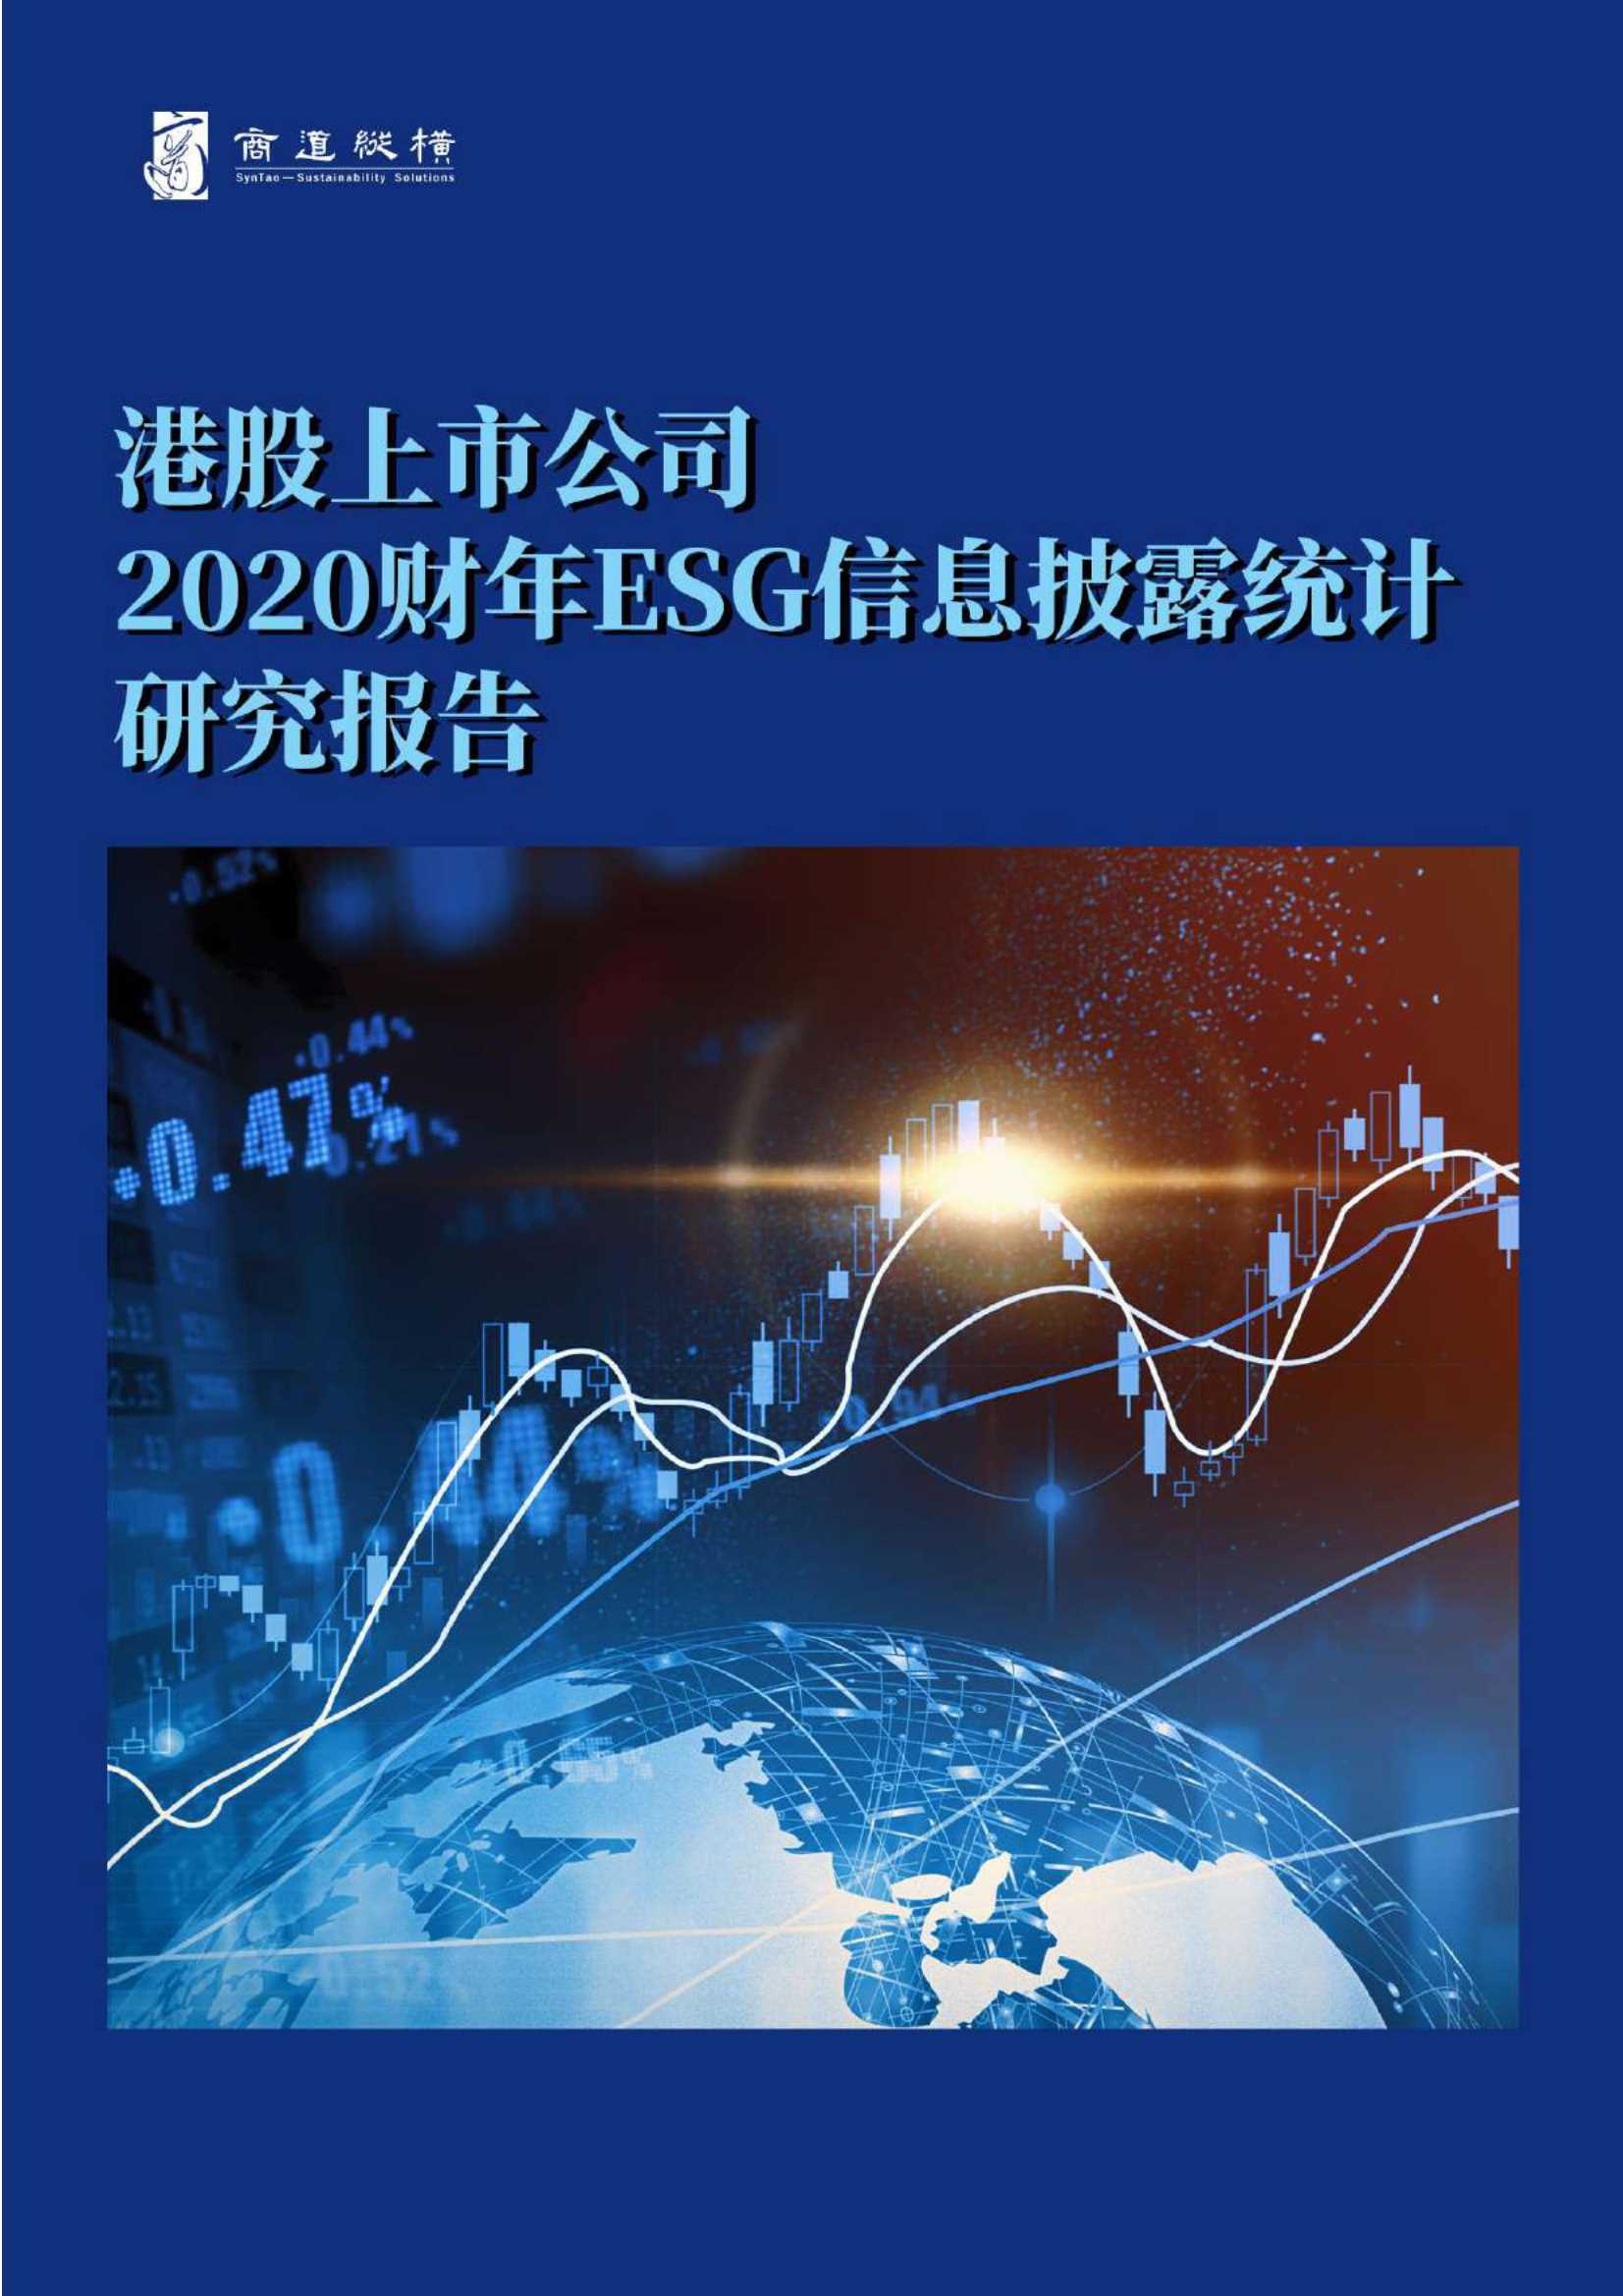 港股上市公司2020财年ESG信息披露统计研究报告-2021.11-22页